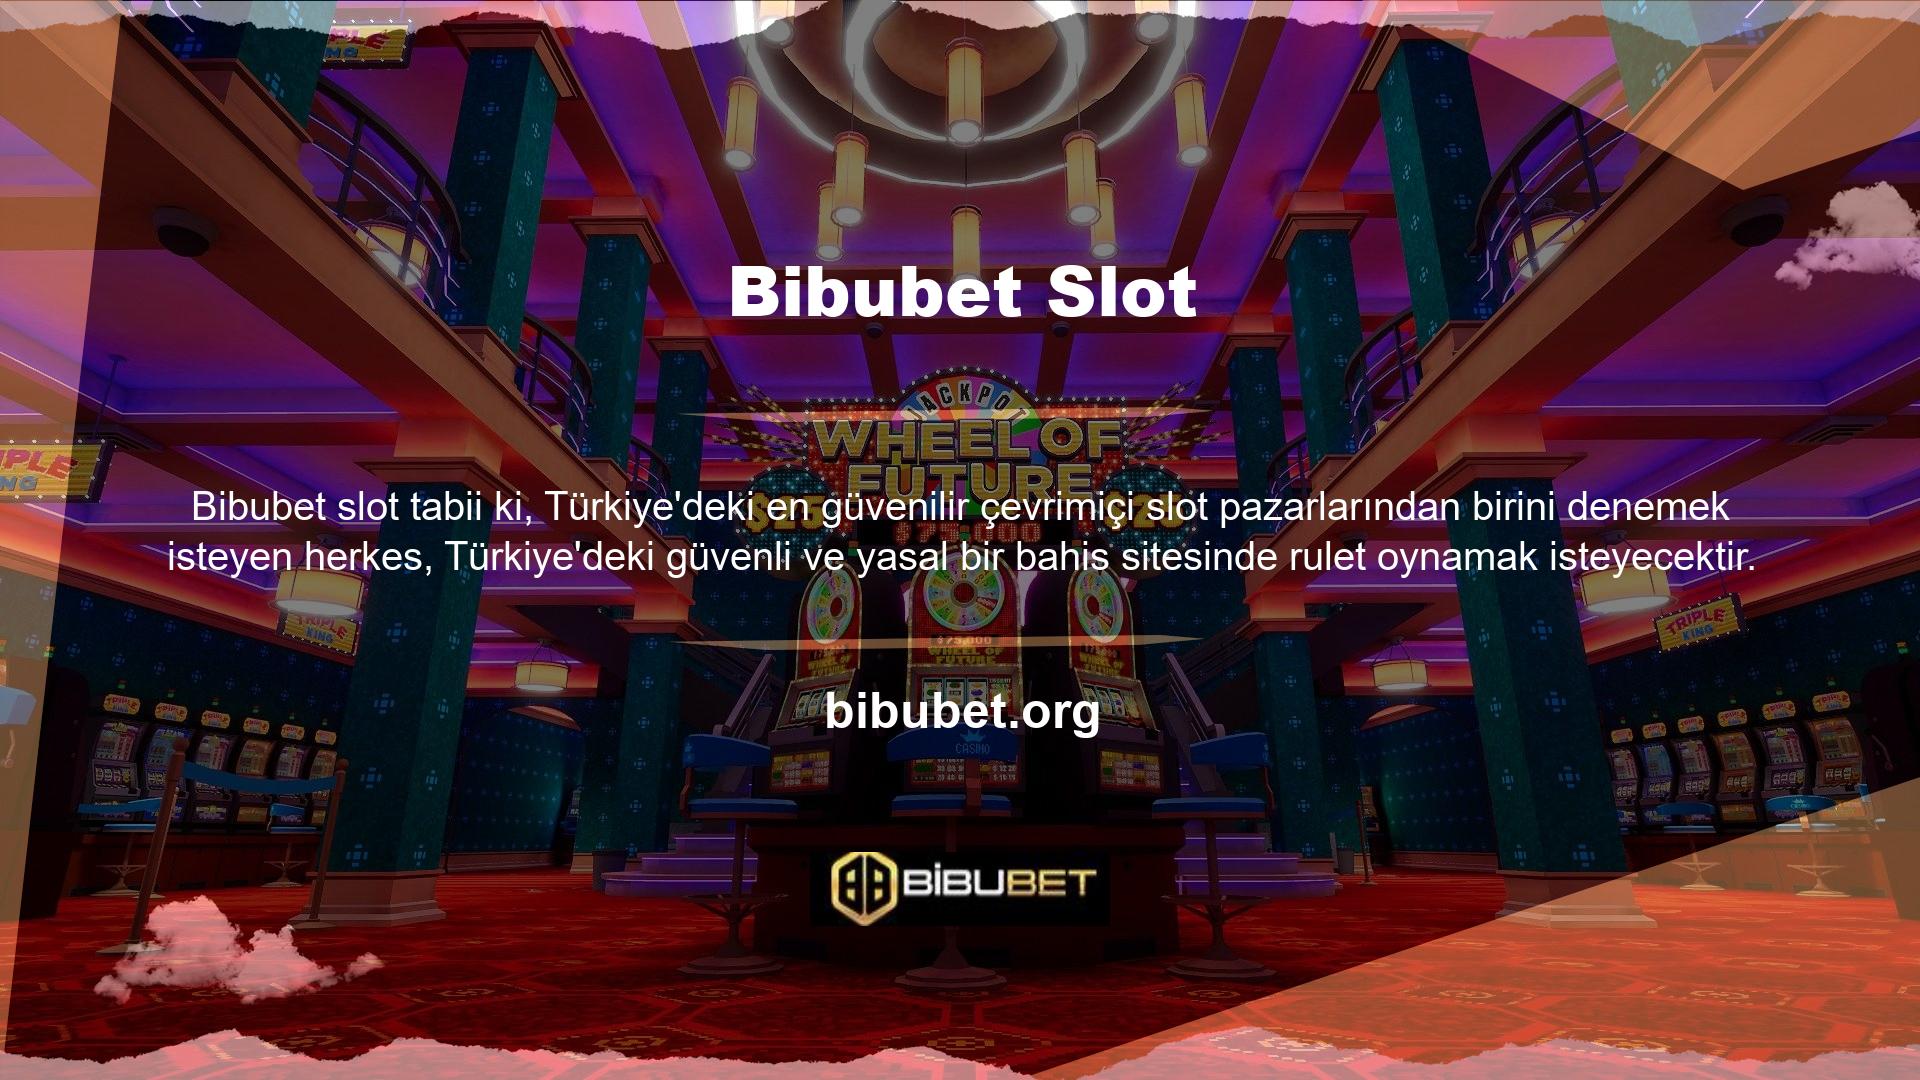 Bu nedenle casino oyunlarına ilgi duyanlar, doğru sağlayıcıya – Türkiye'nin en güvenli ve oyun detayları açısından en avantajlı yasal bahis firmasına kayıt olmaya çalışırlar